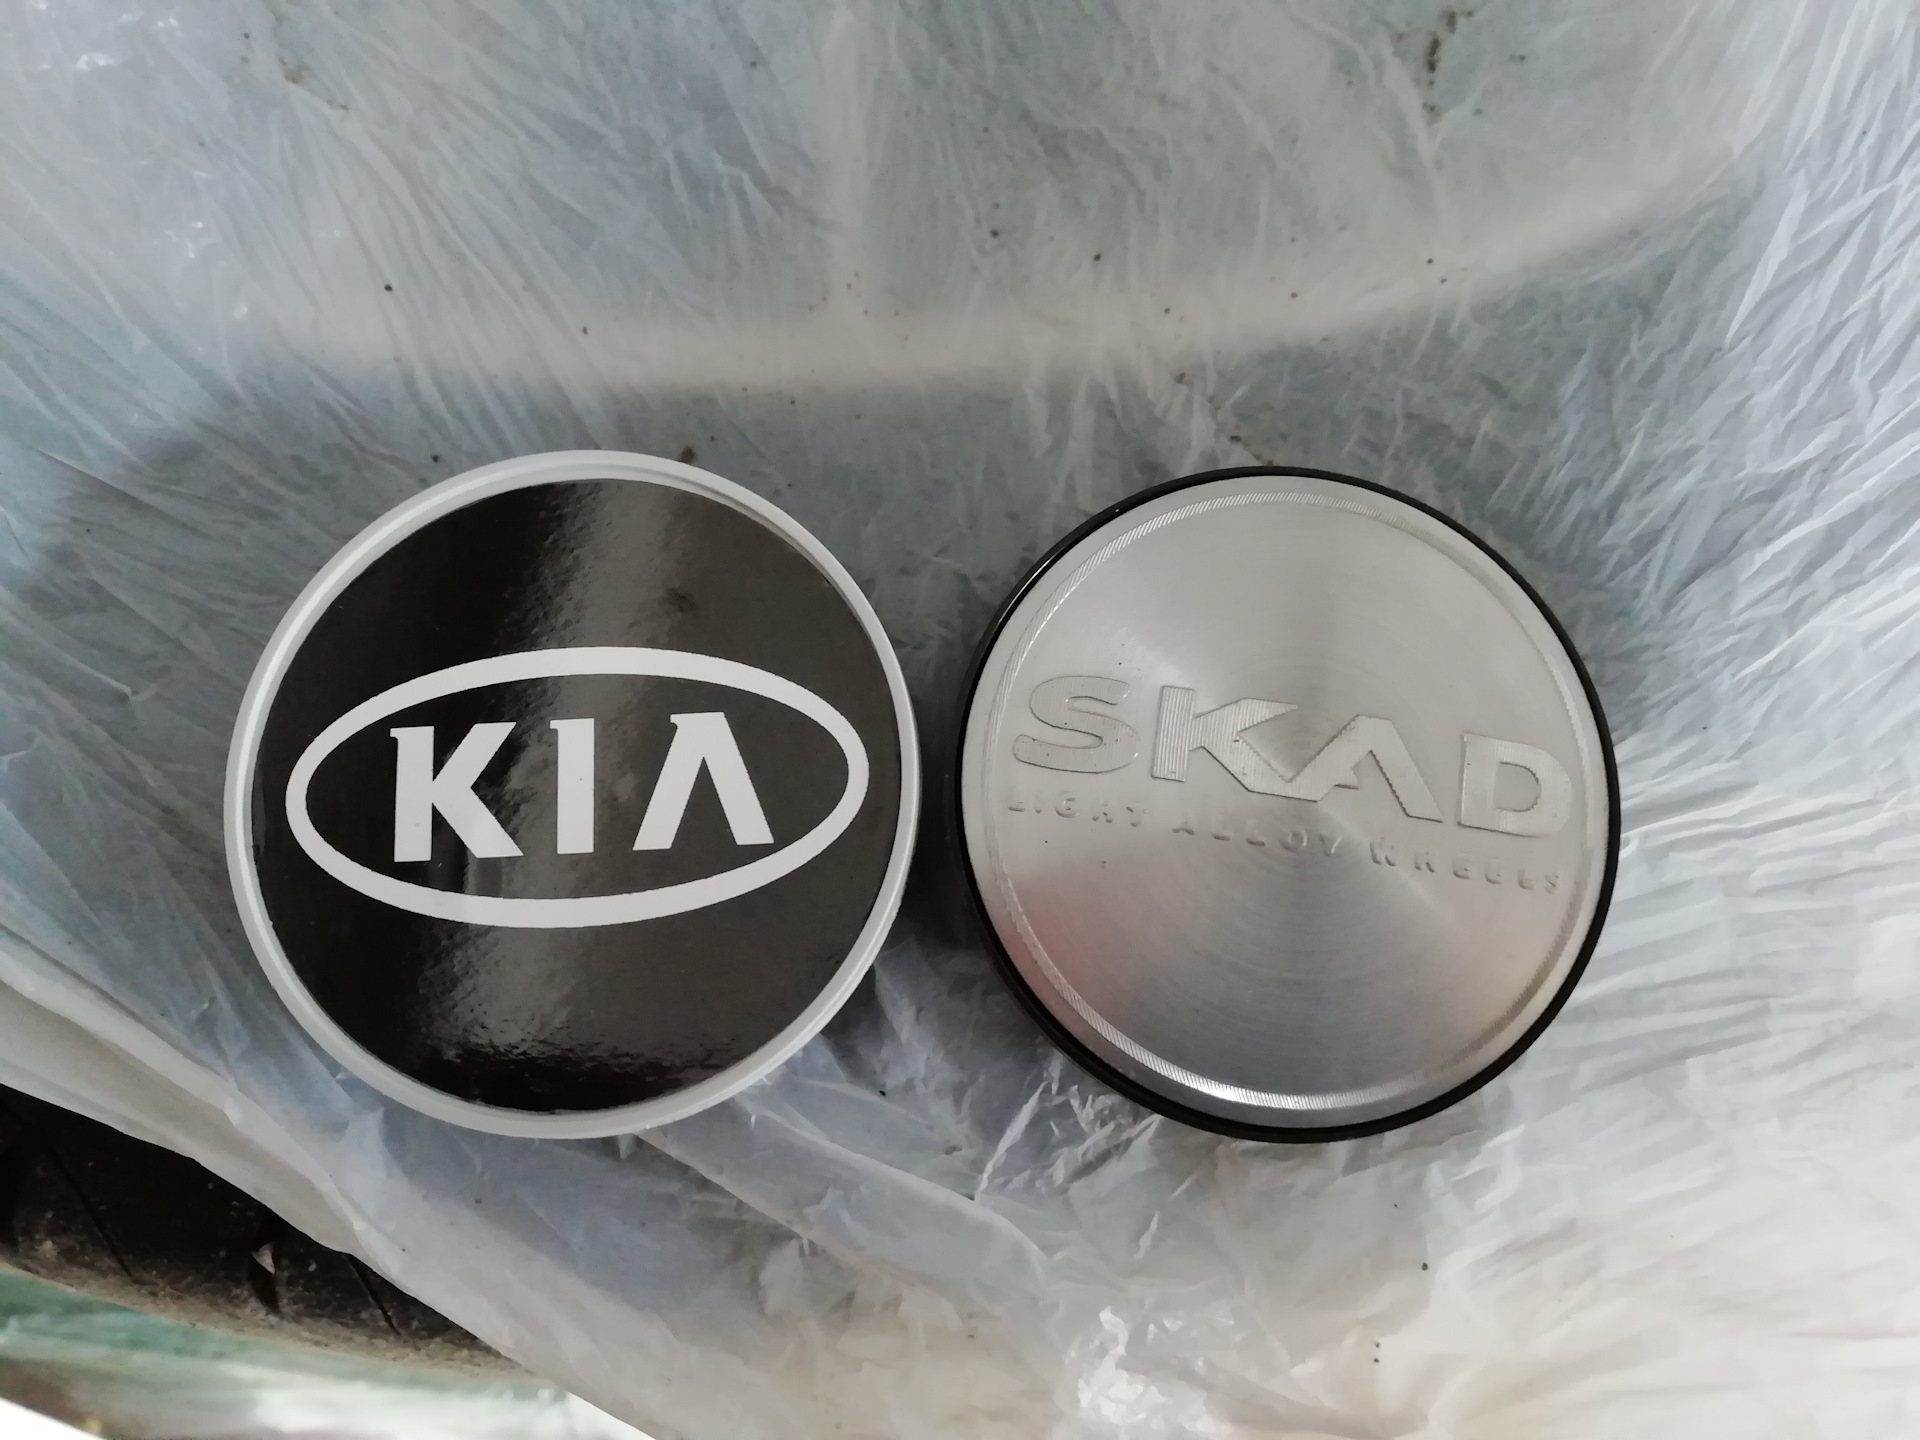 Размер литого диска киа рио. Заглушки дисков Kia Rio 1. Заглушки на литые диски Скад 56мм с логотипом Киа. Колпачки на литые диски Скад диаметр 56. Заглушка диска Киа Рио 3.